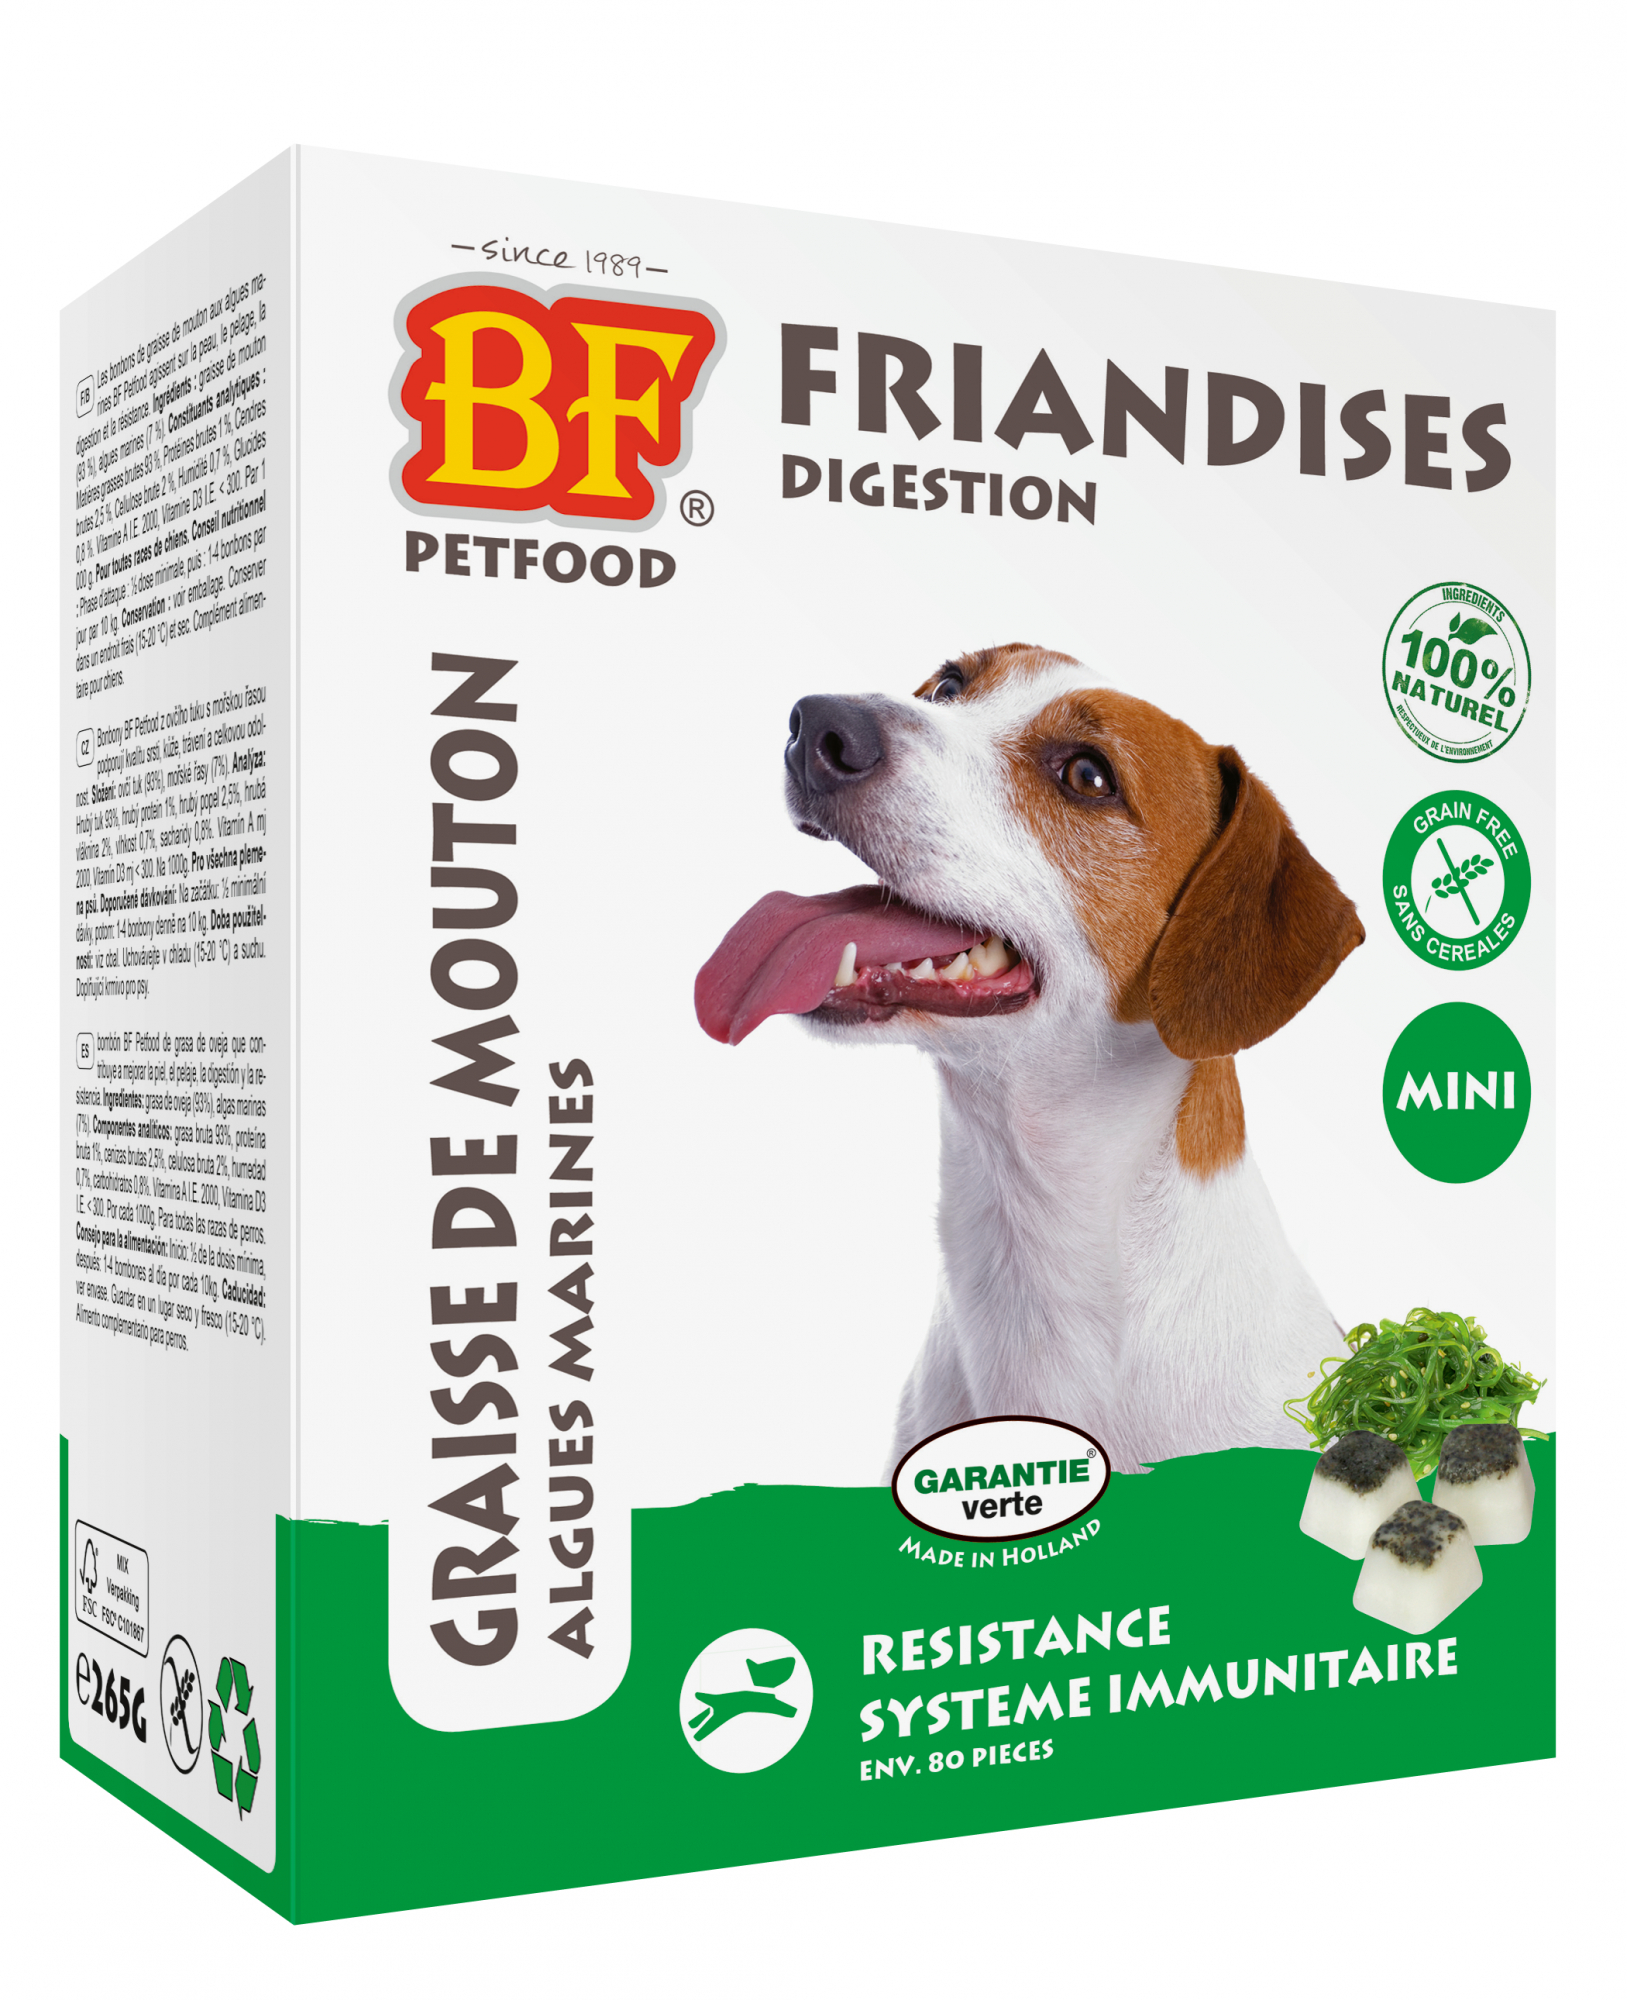  BF PETFOOD - BIOFOOD Bombones para Perros con Algas Marinas para la Resistencia & la Digestión